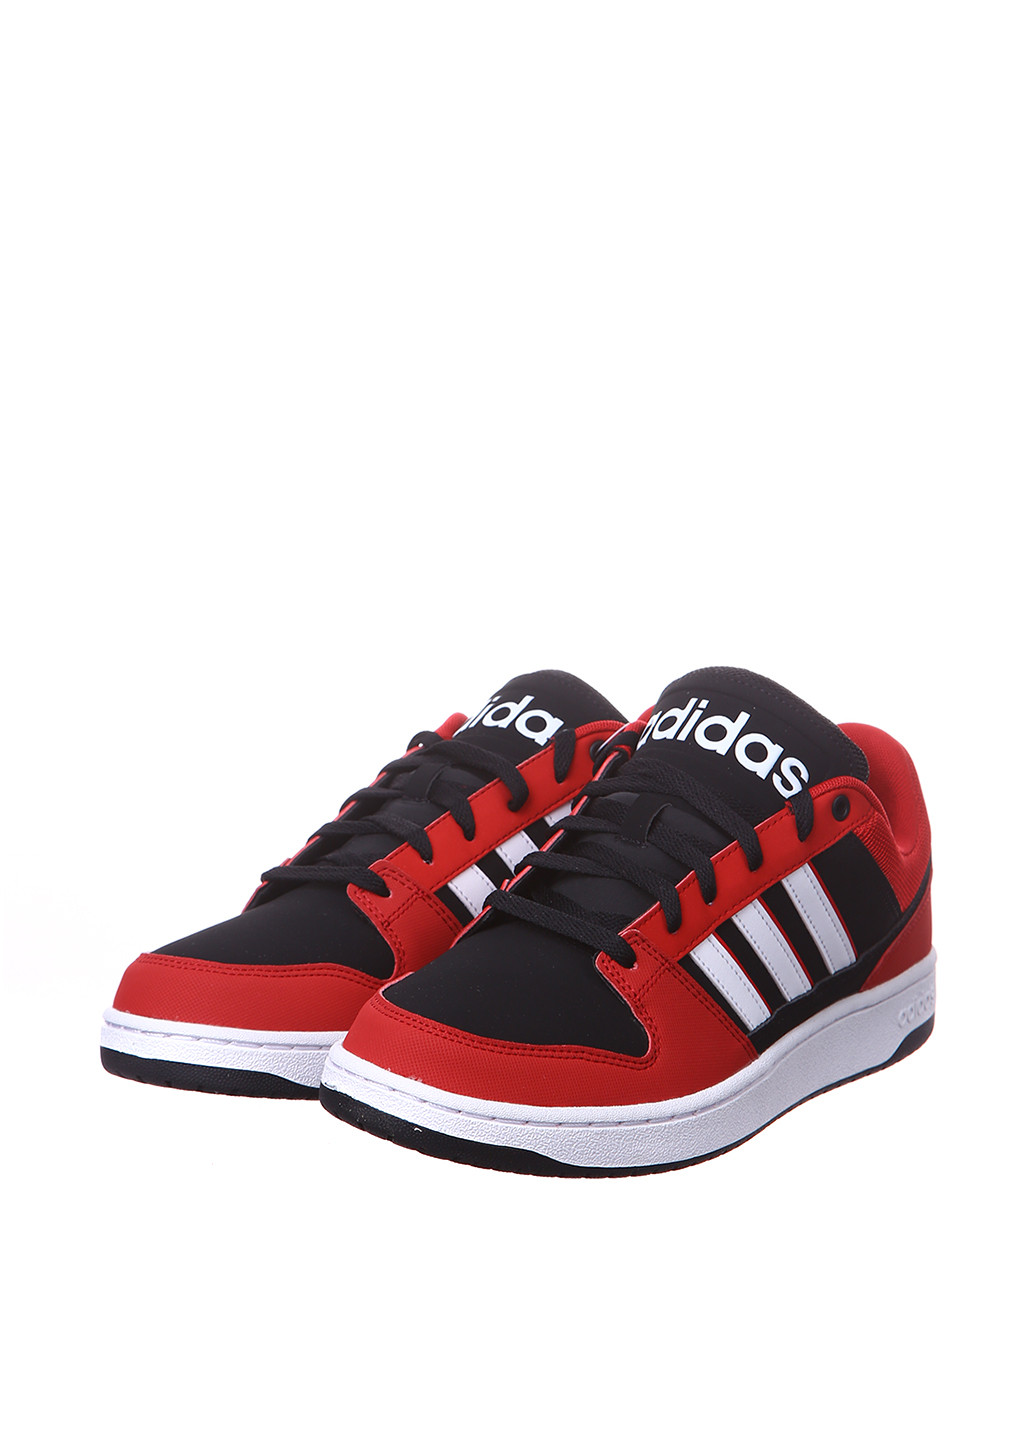 Красные демисезонные кроссовки adidas